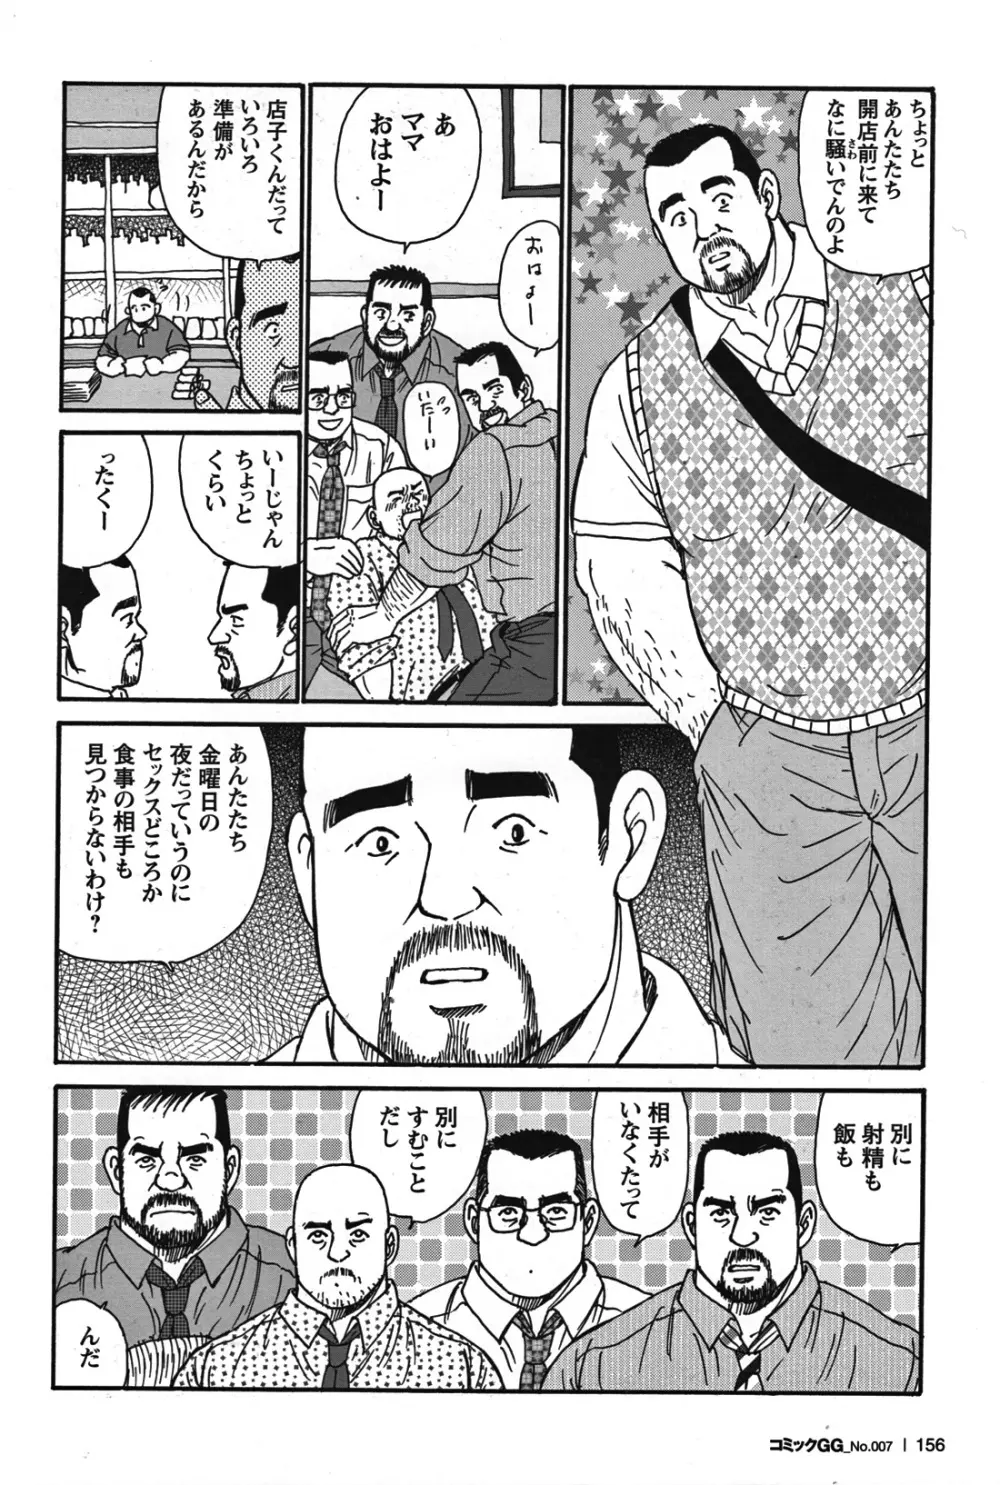 Comic G-men Gaho No.07 136ページ